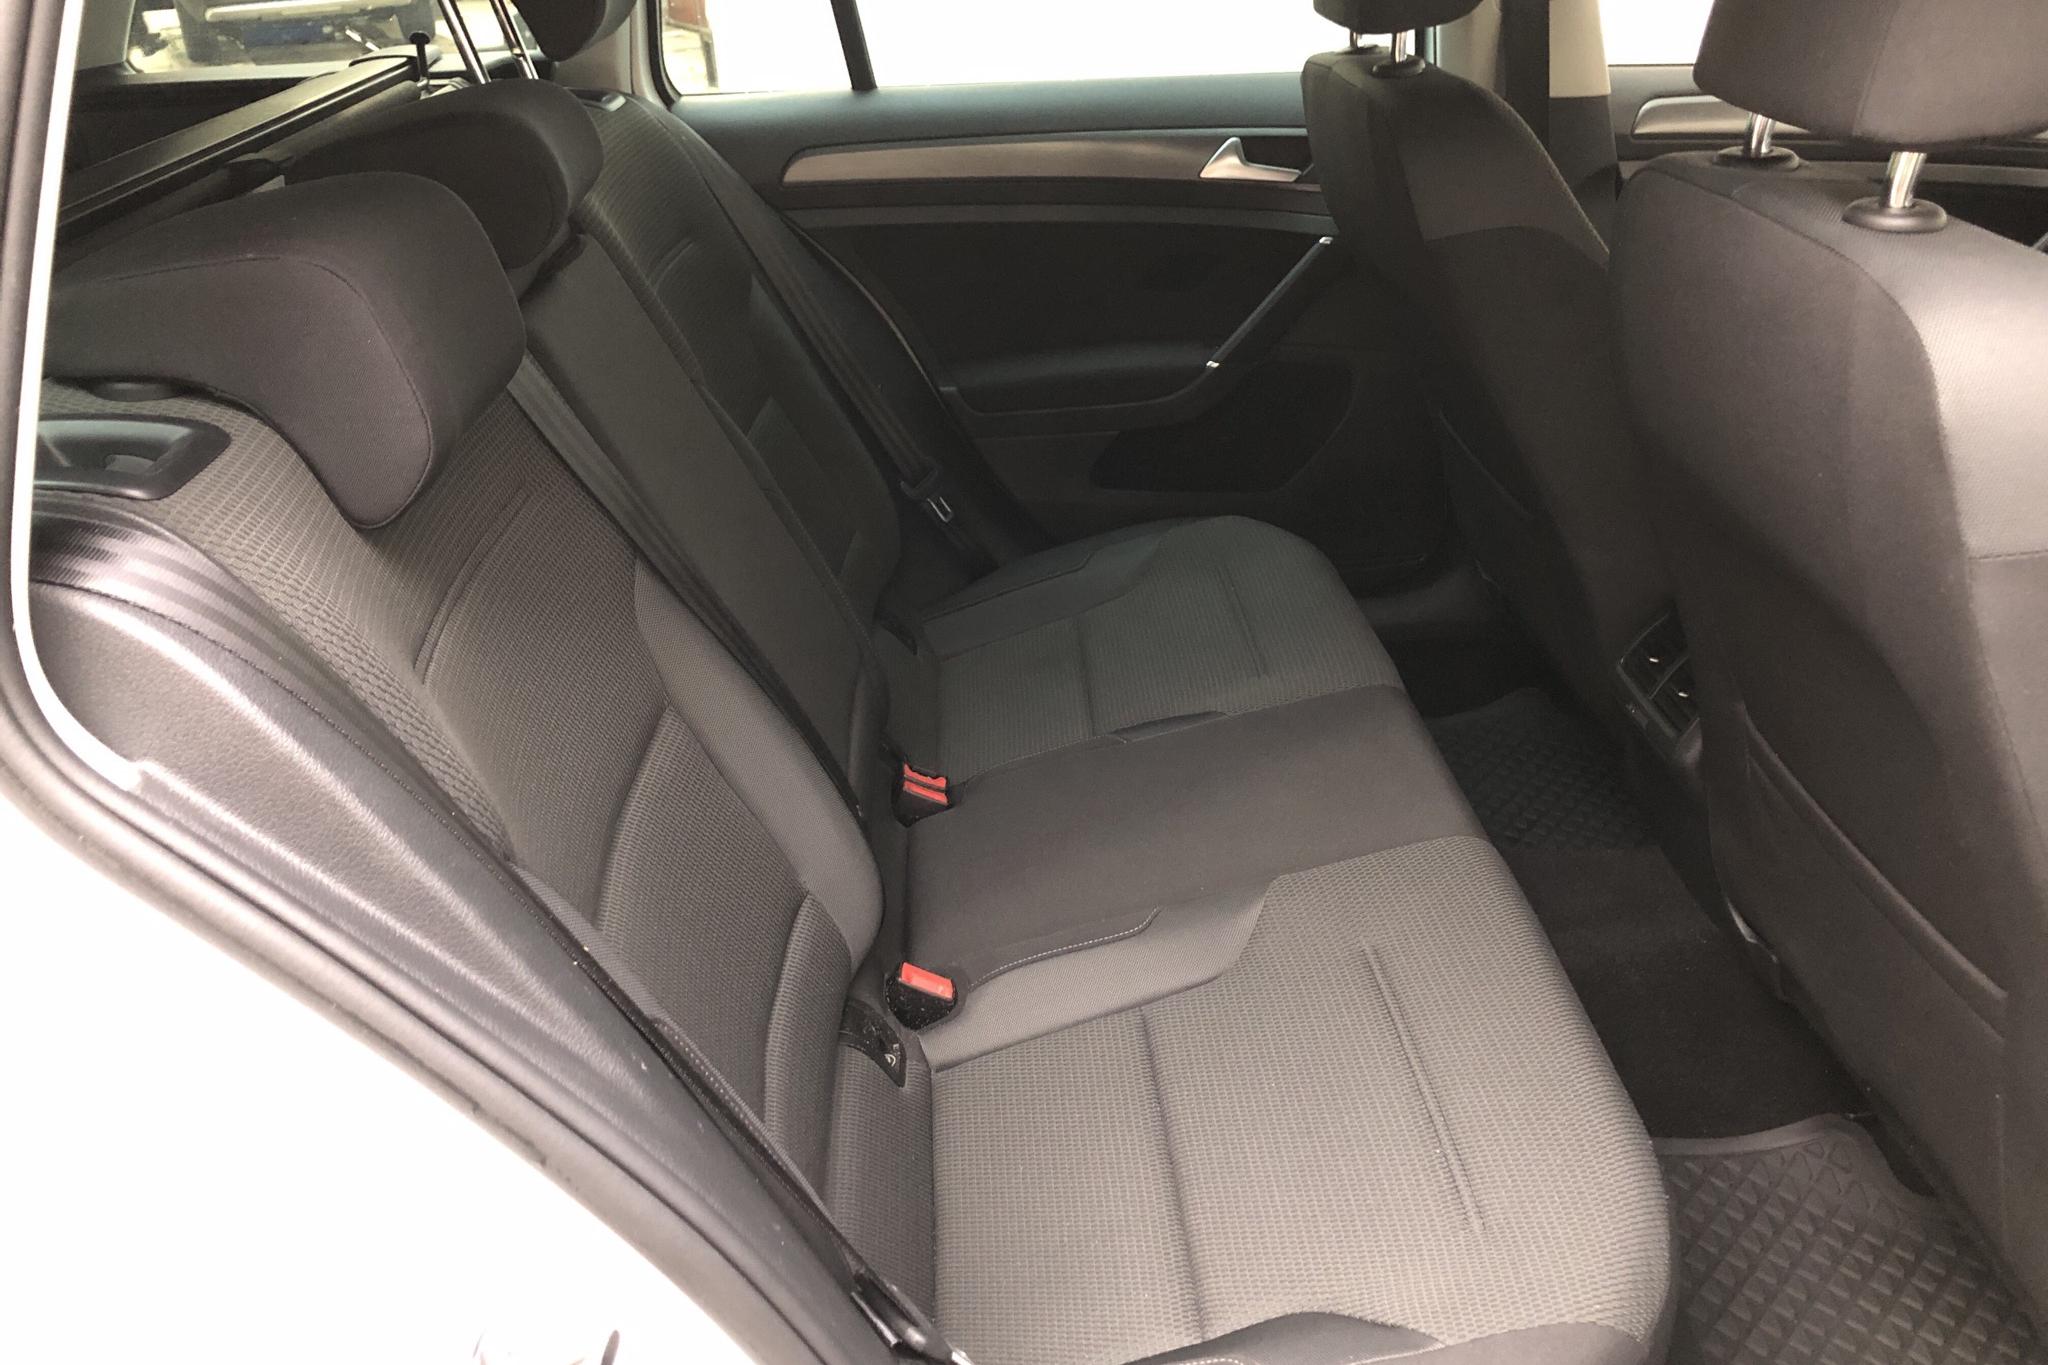 VW Golf VII 1.6 TDI Sportscombi (115hk) - 6 313 mil - Automat - vit - 2019